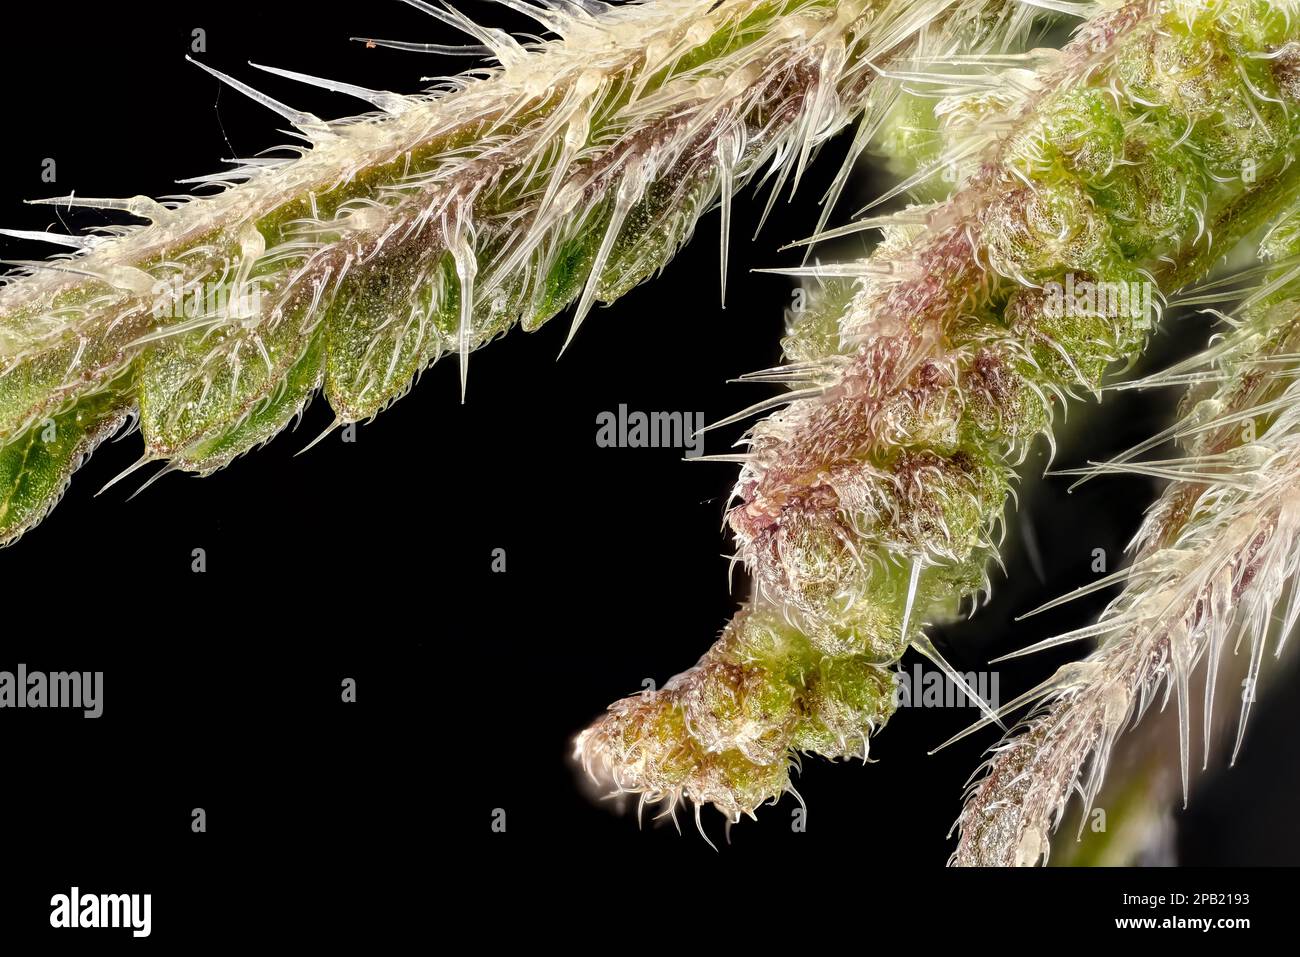 Junge Stechnesseln (Urtica dioica) Pflanzen Blumen mit schwarzem Hintergrund, Mikroskopie Details, transparente Stechhaare genannt Trichome sichtbar, Bild Stockfoto